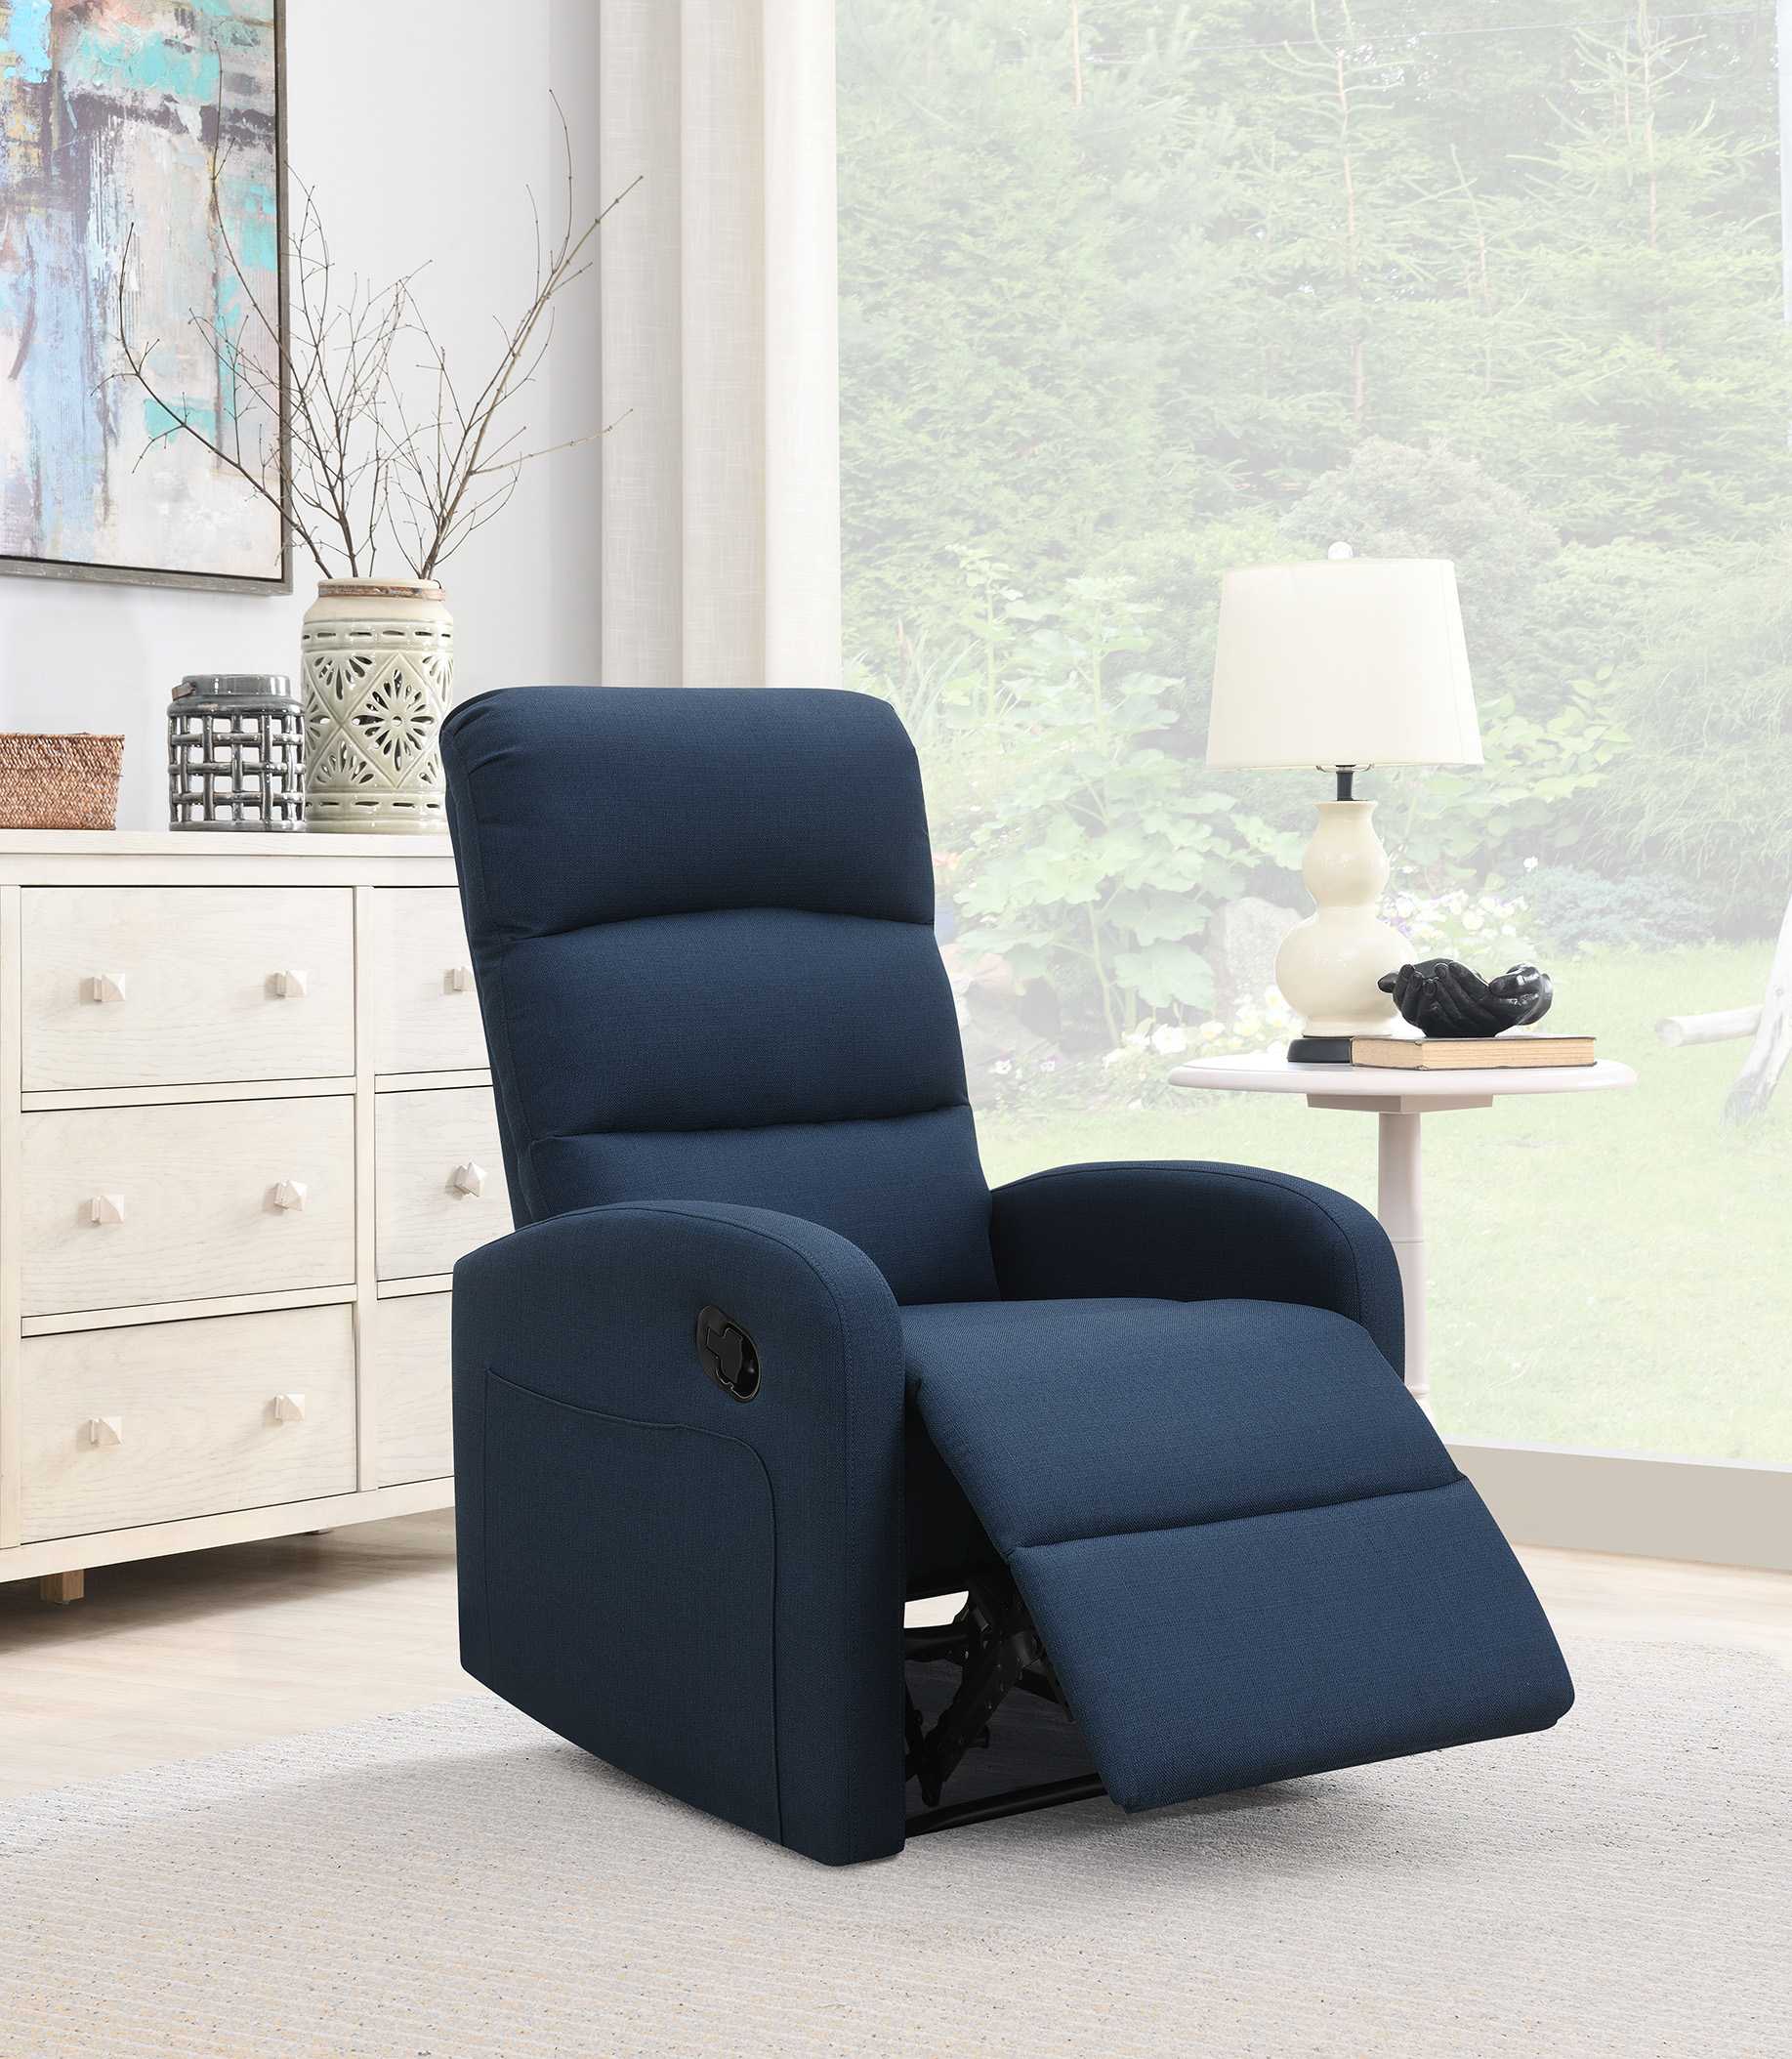 Relaxing Navy Blue Recliner Chair